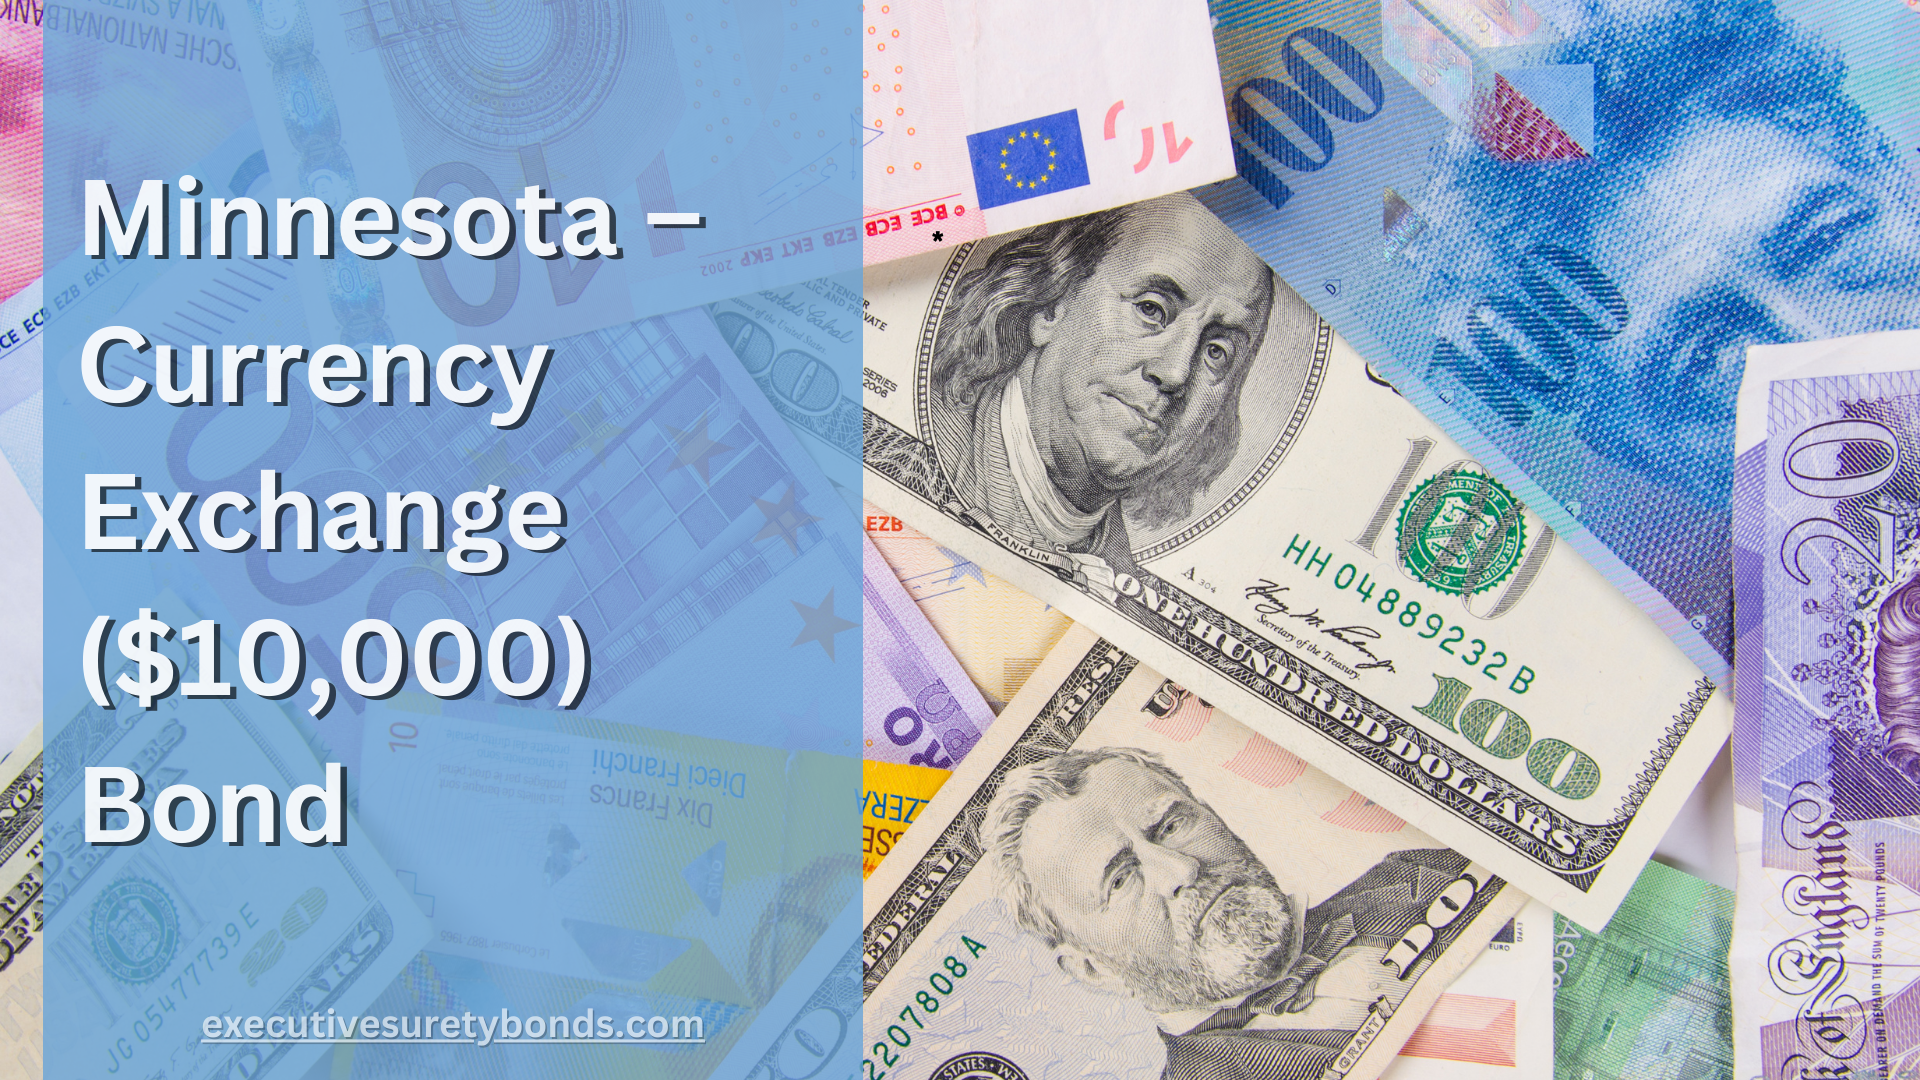 Minnesota – Currency Exchange ($10,000) Bond